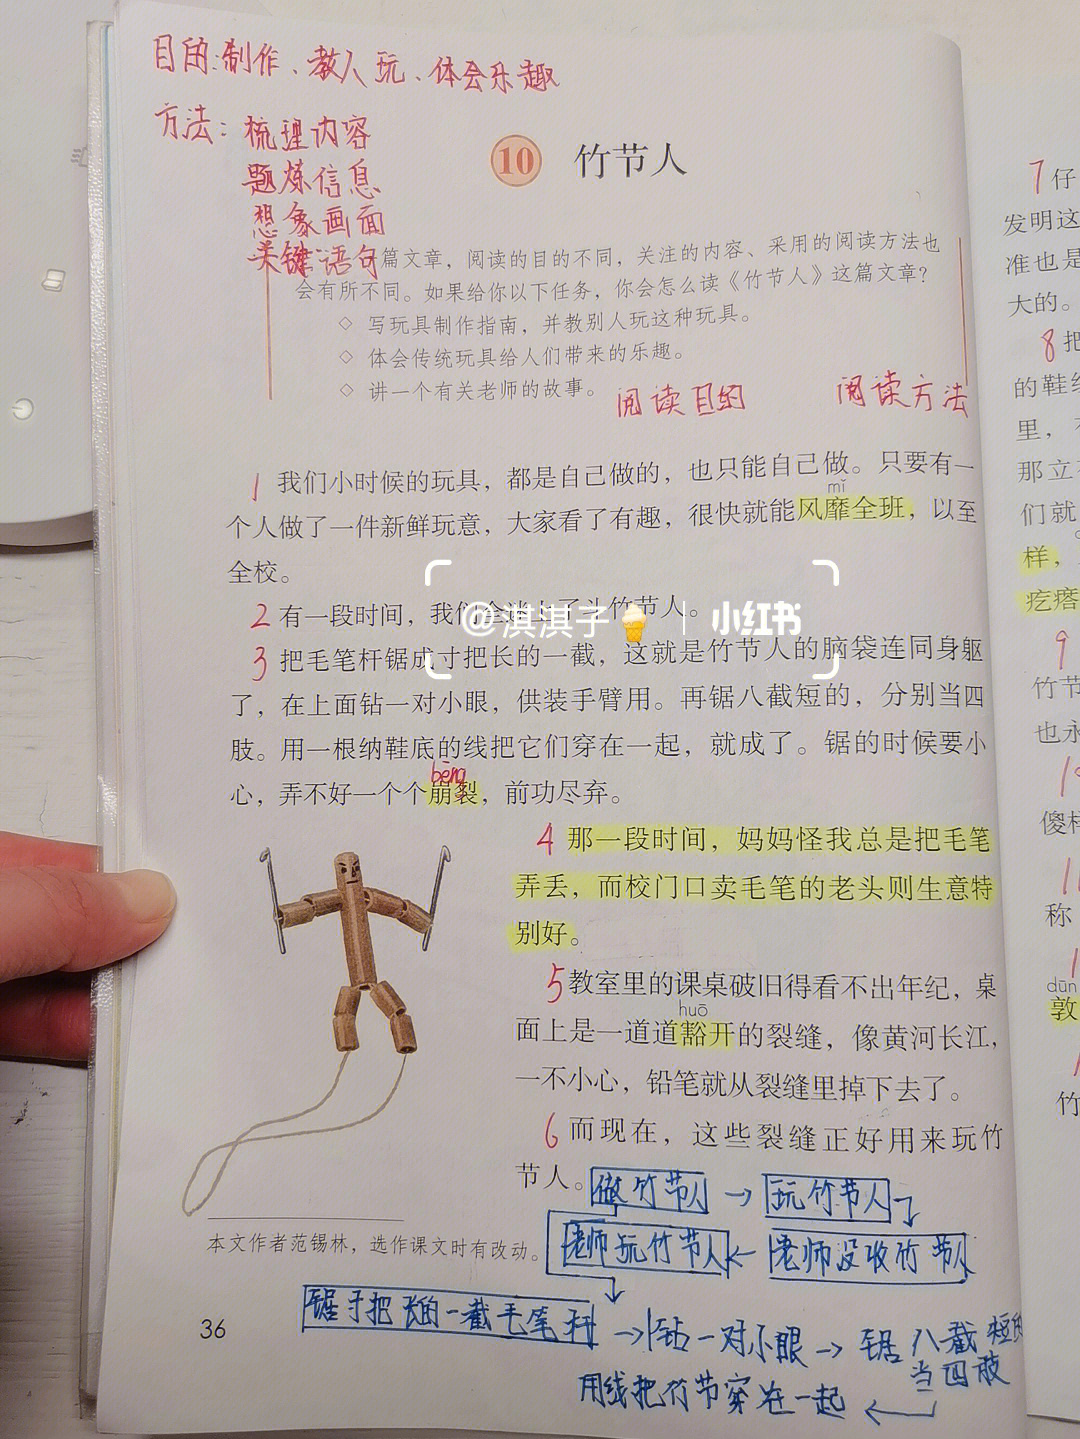 10竹节人词语图片